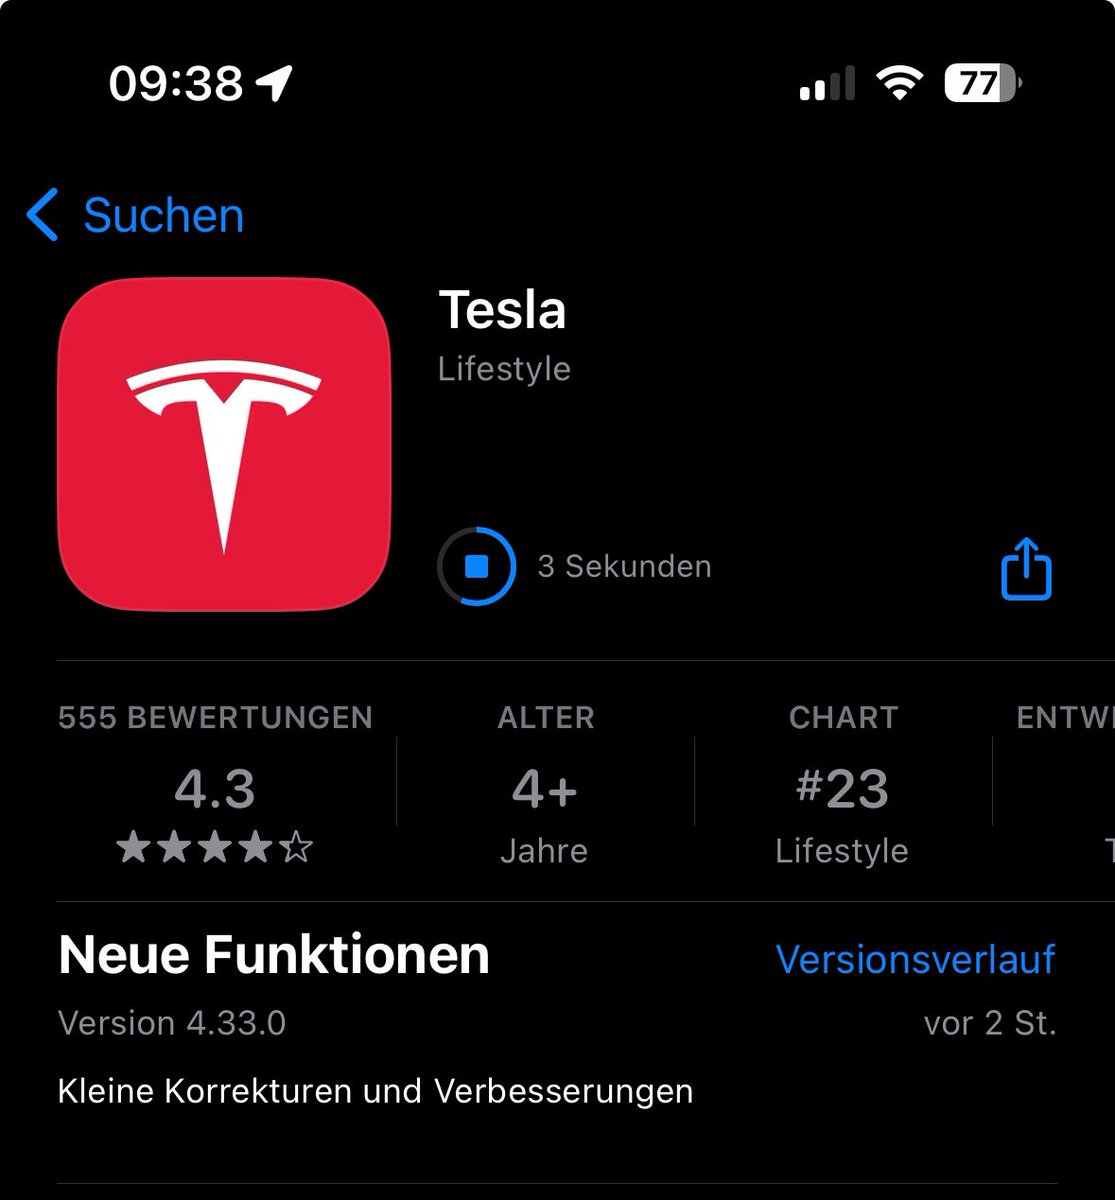 New Tesla Software App Update 4.33.0

@zfescht @NotATeslaApp @Tesla_App_iOS @dario_xz @EFIEBER_ANDRE @teslascope